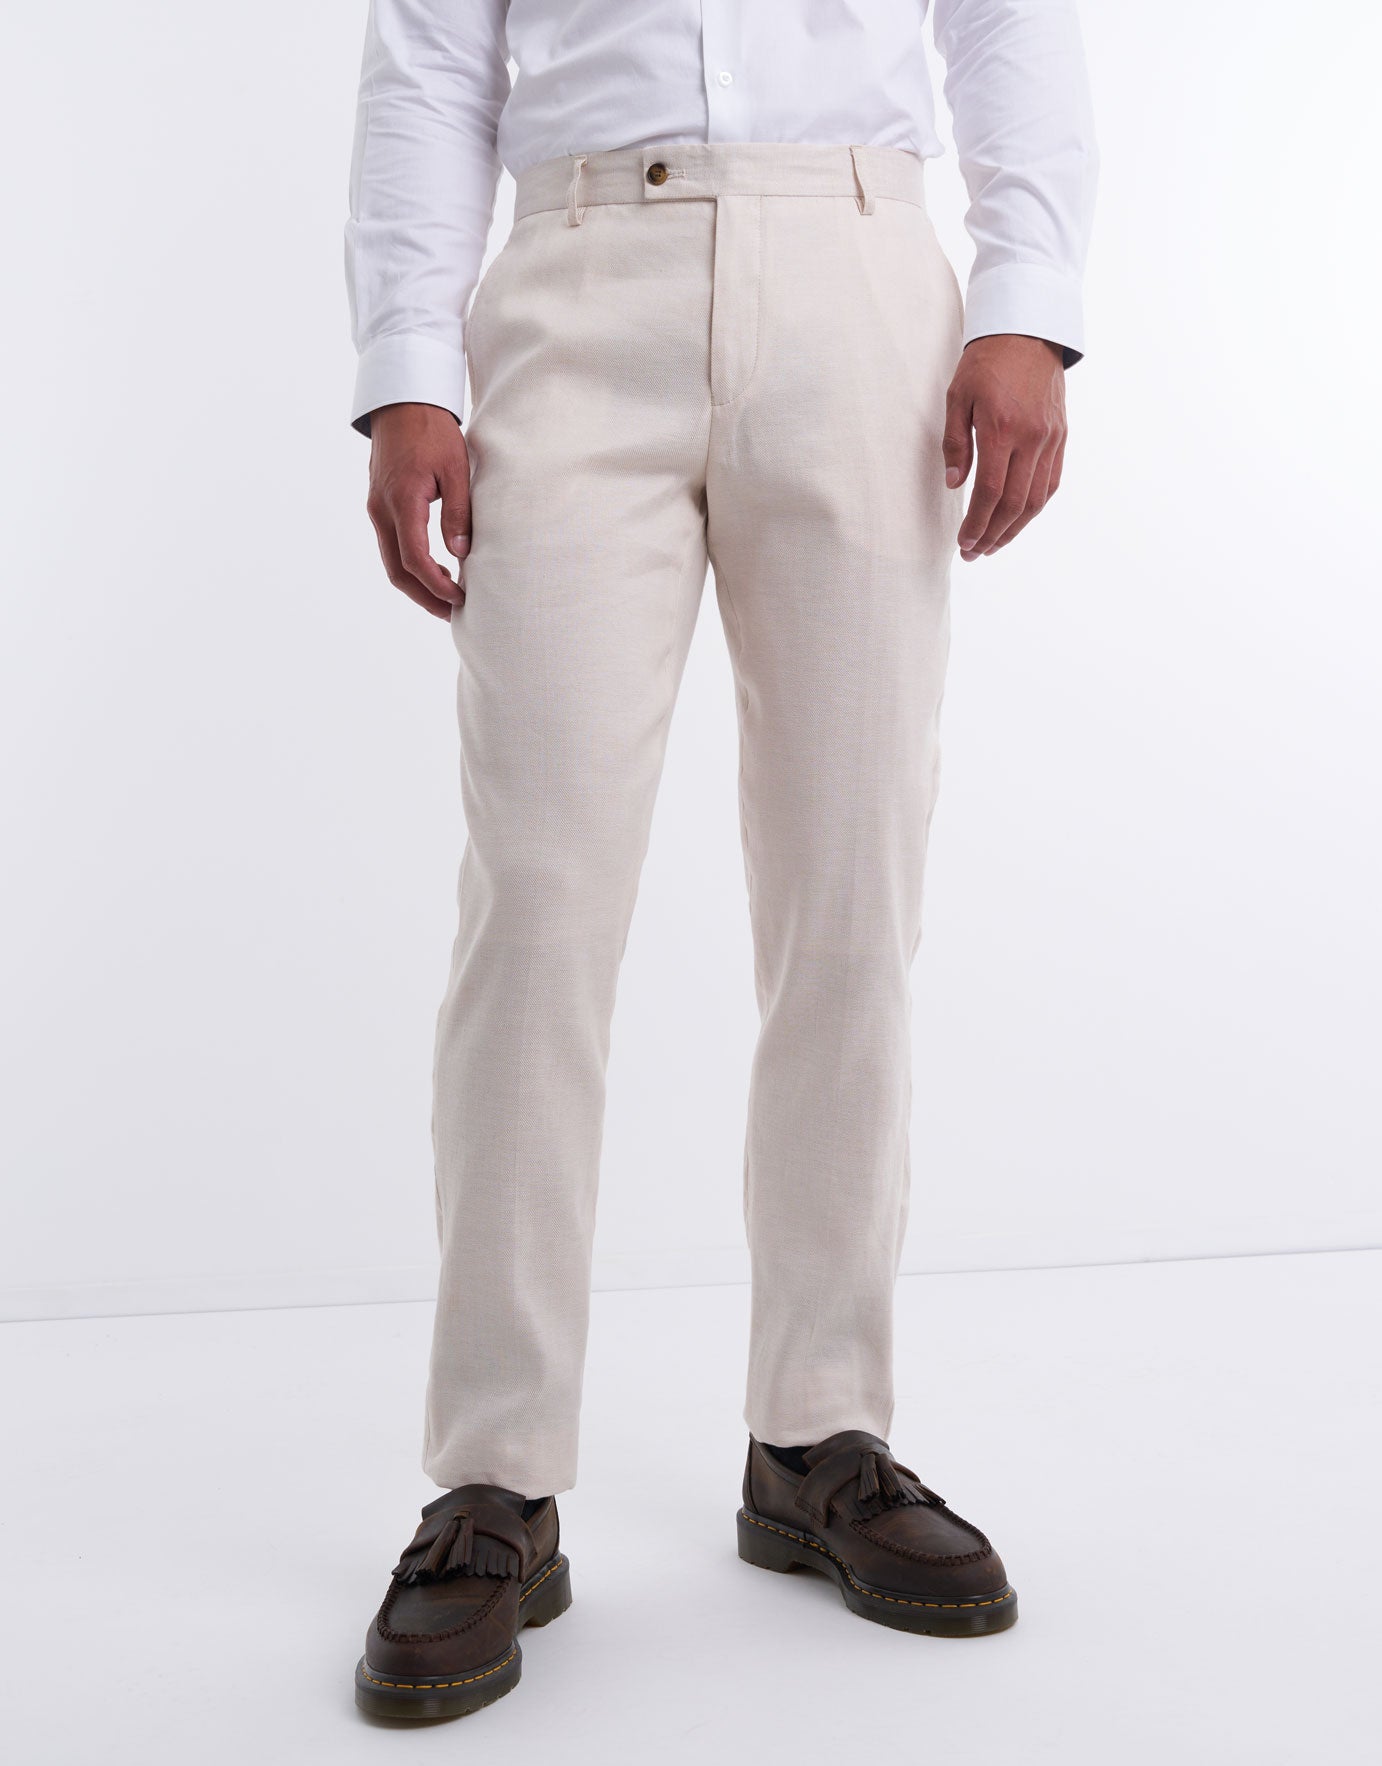 Affordable Vest Ensemble with Cavalier Pants  Bow Tie